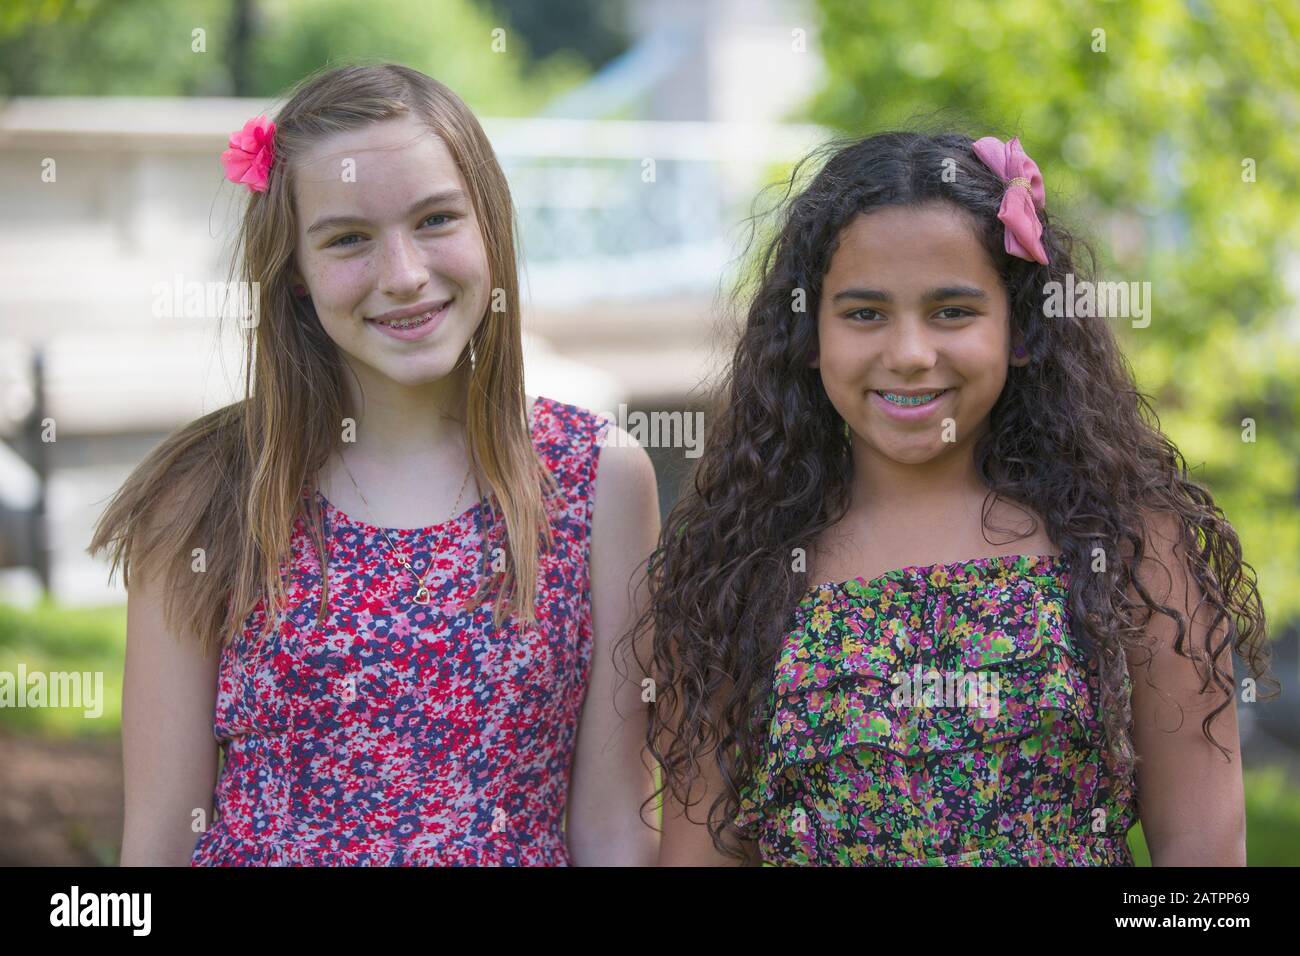 Portrait de deux filles portant des vêtements colorés et des accessoires pour cheveux Banque D'Images